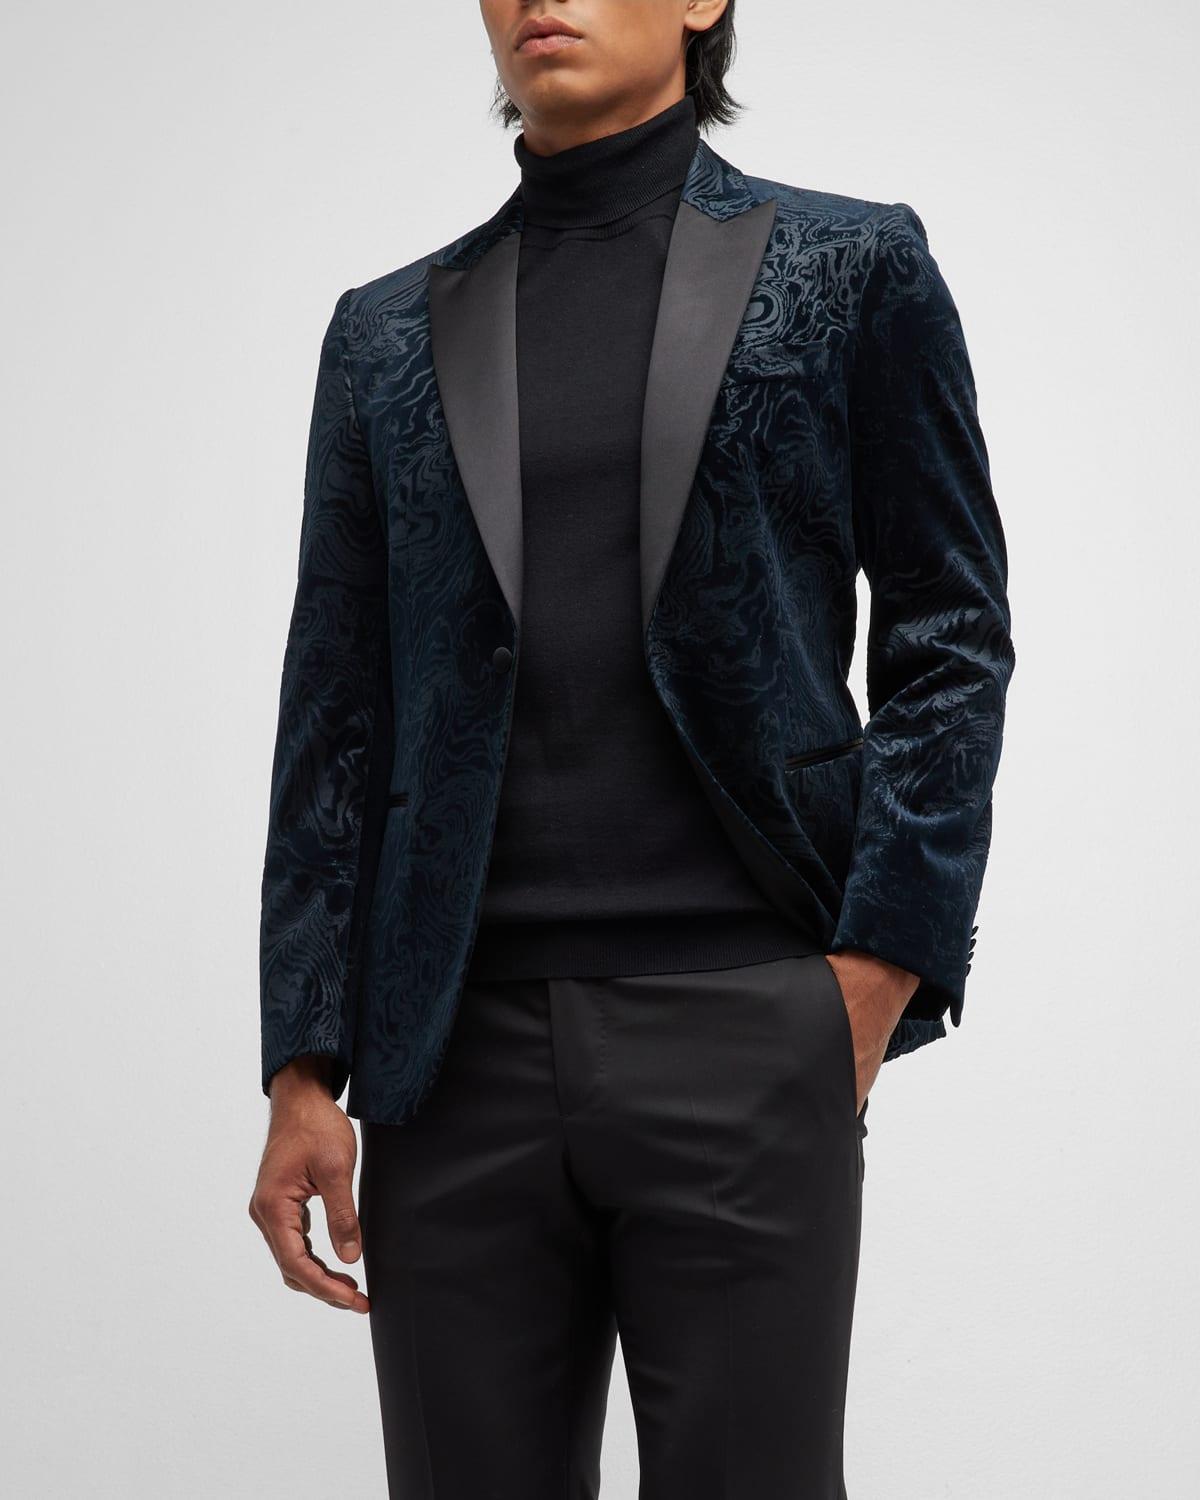 BOSS by HUGO BOSS Floral Velvet Tuxedo Jacket in Blue for Men | Lyst